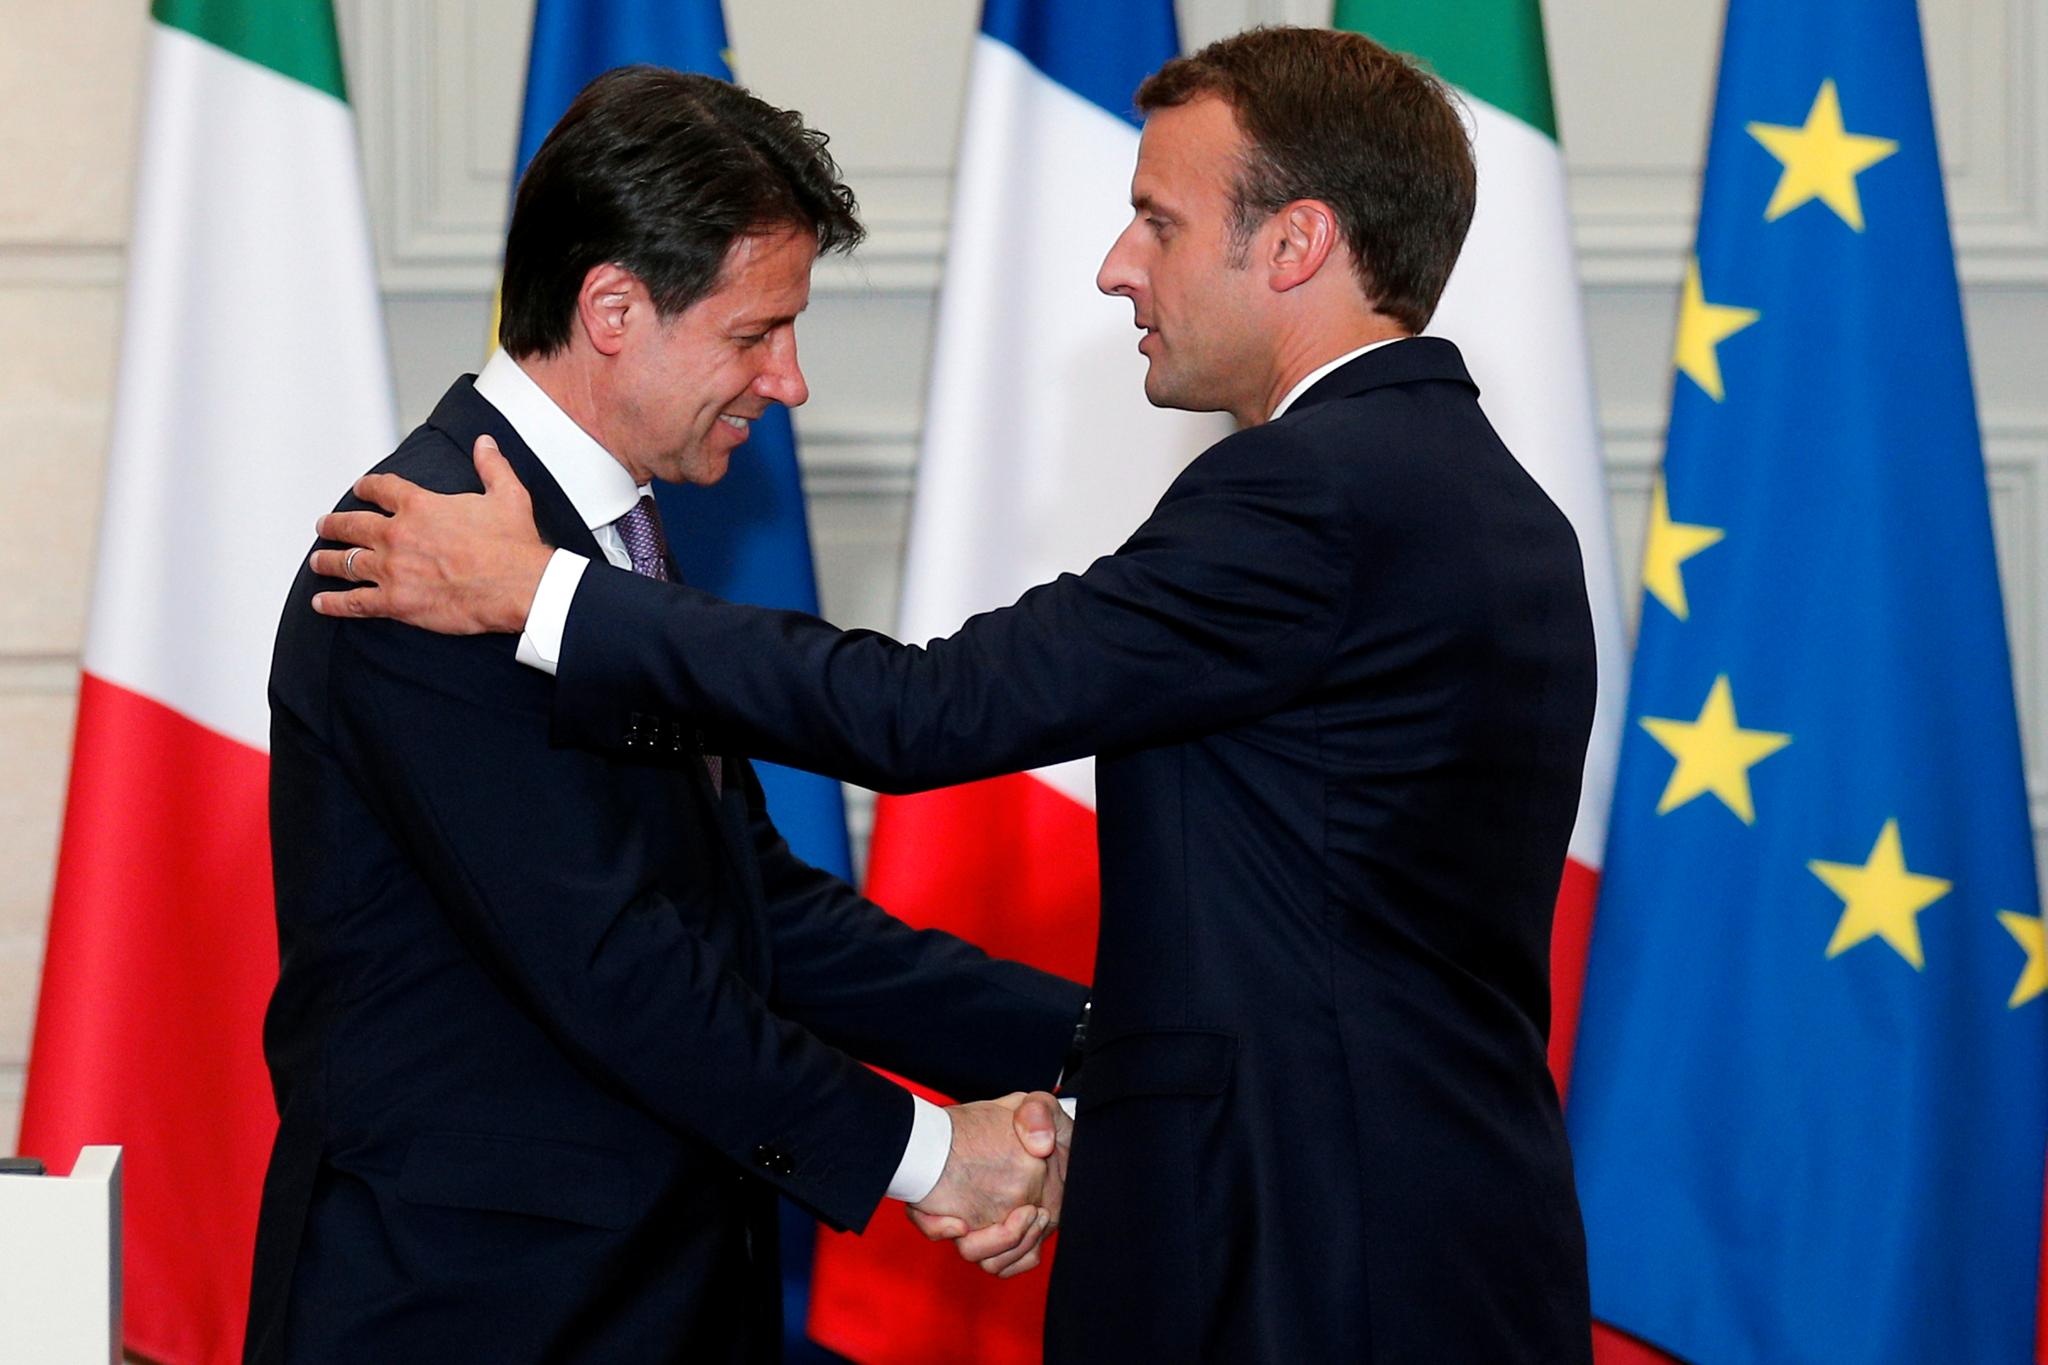 Etter en uke med ordkrig mellom Italia og Frankrike om migranter, møttes Frankrikes president Emmanuel Macron og Italias nye statsminister Giuseppe Conte fredag for å prøve å glatte over krangelen.